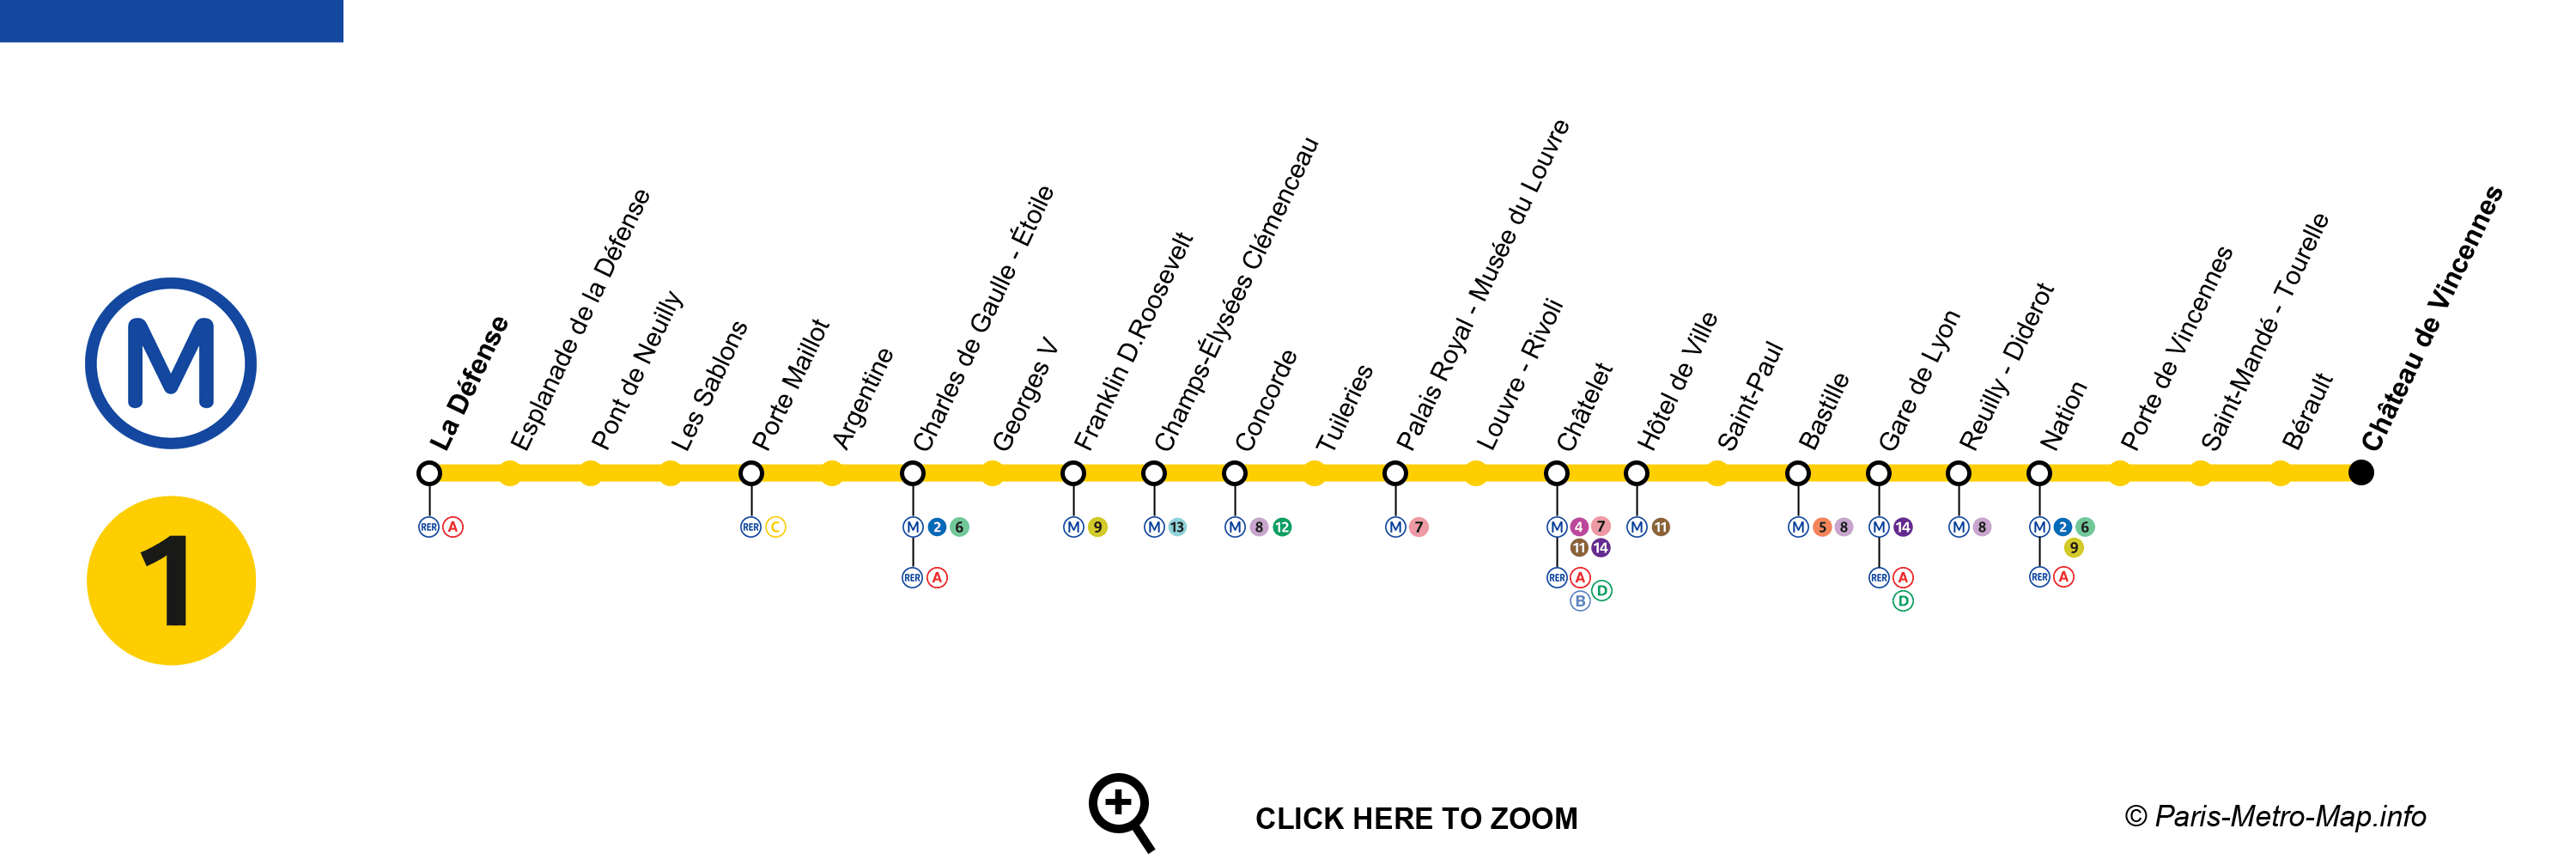 métro 1 paris